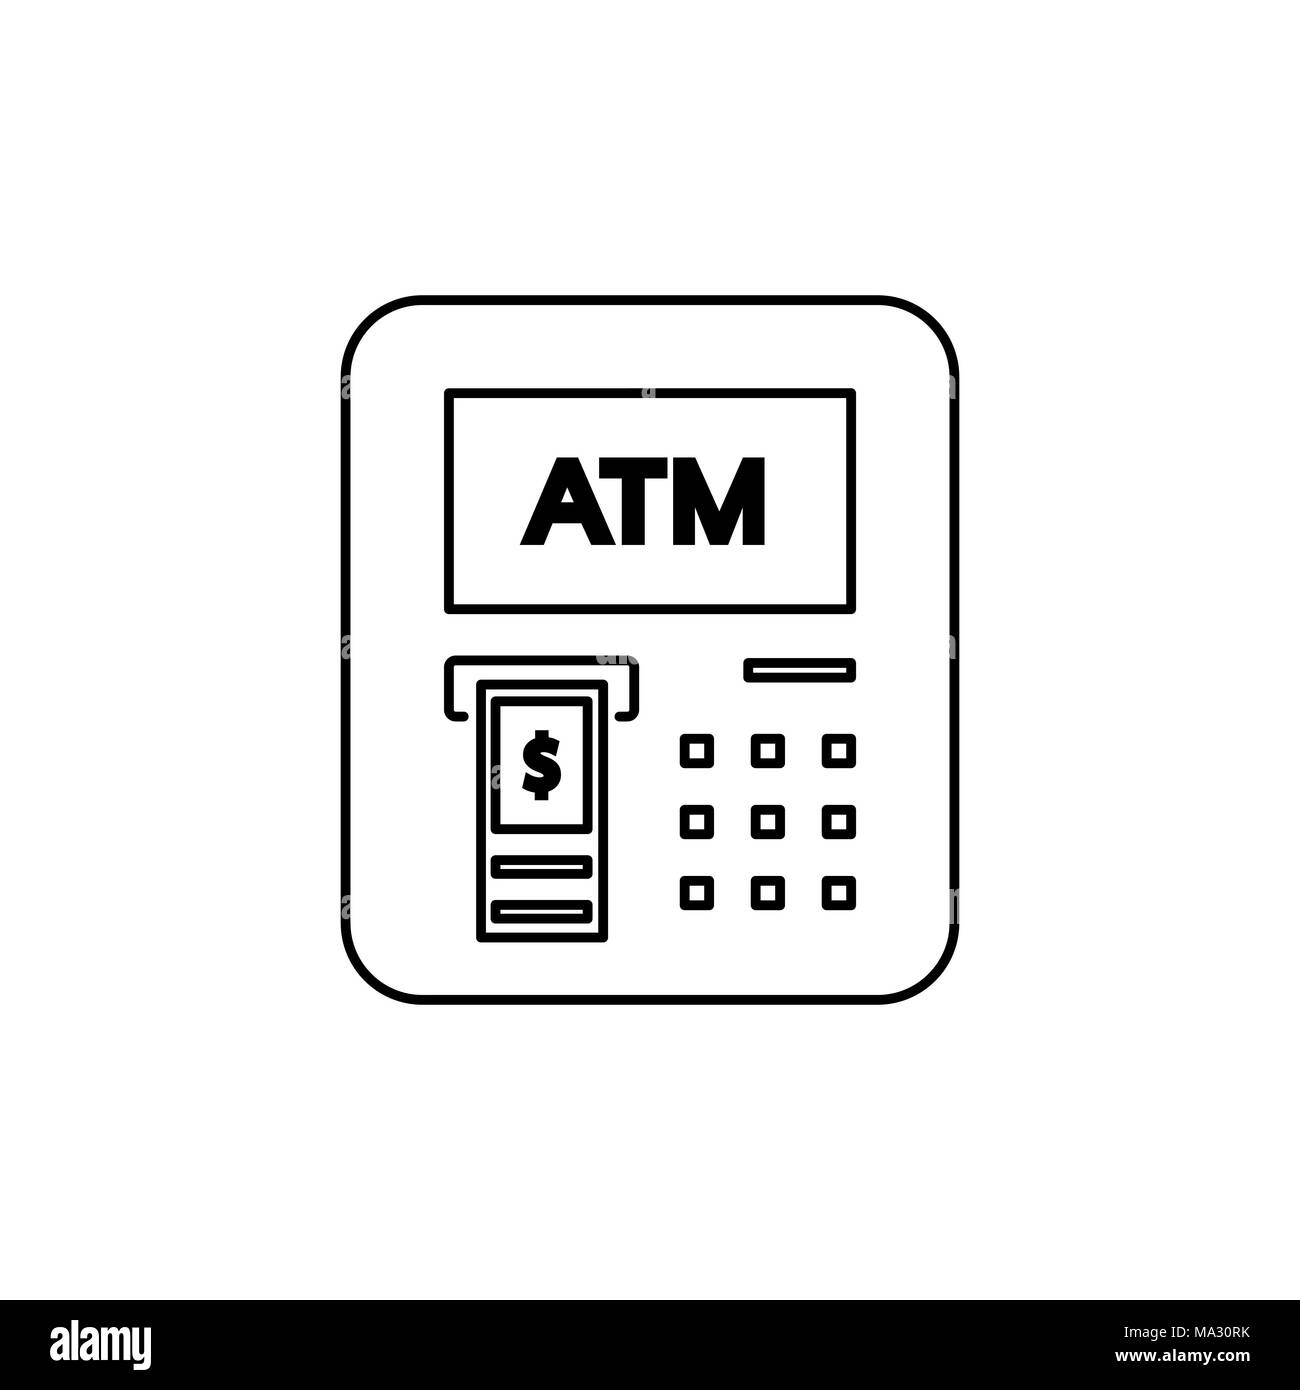 Icône style ATM télévision simple illustration vectorielle. Illustration de Vecteur